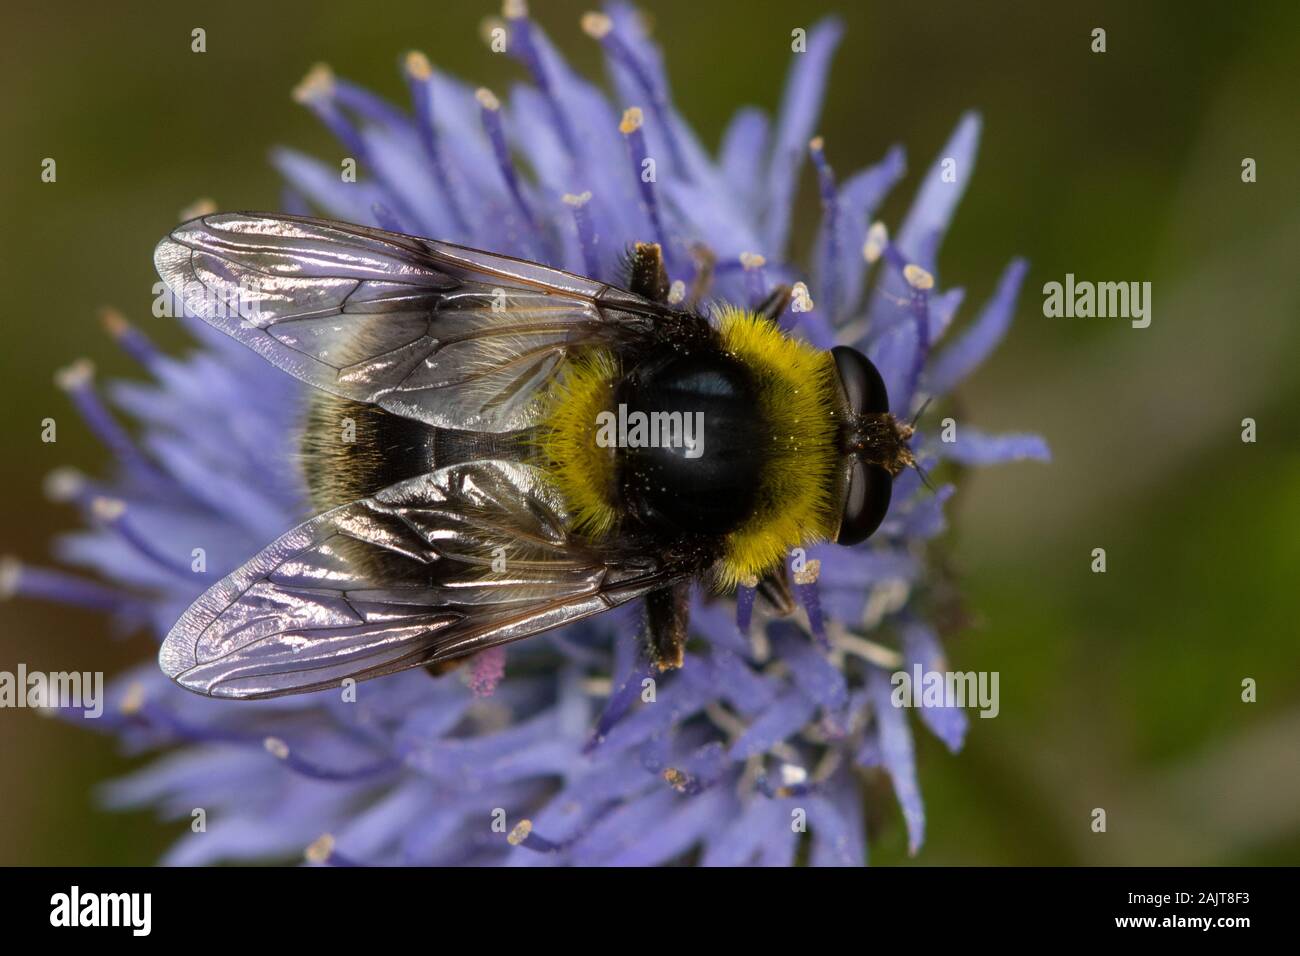 Volucella bomblans hembra (una mosca similar a un abejorro) Foto de stock